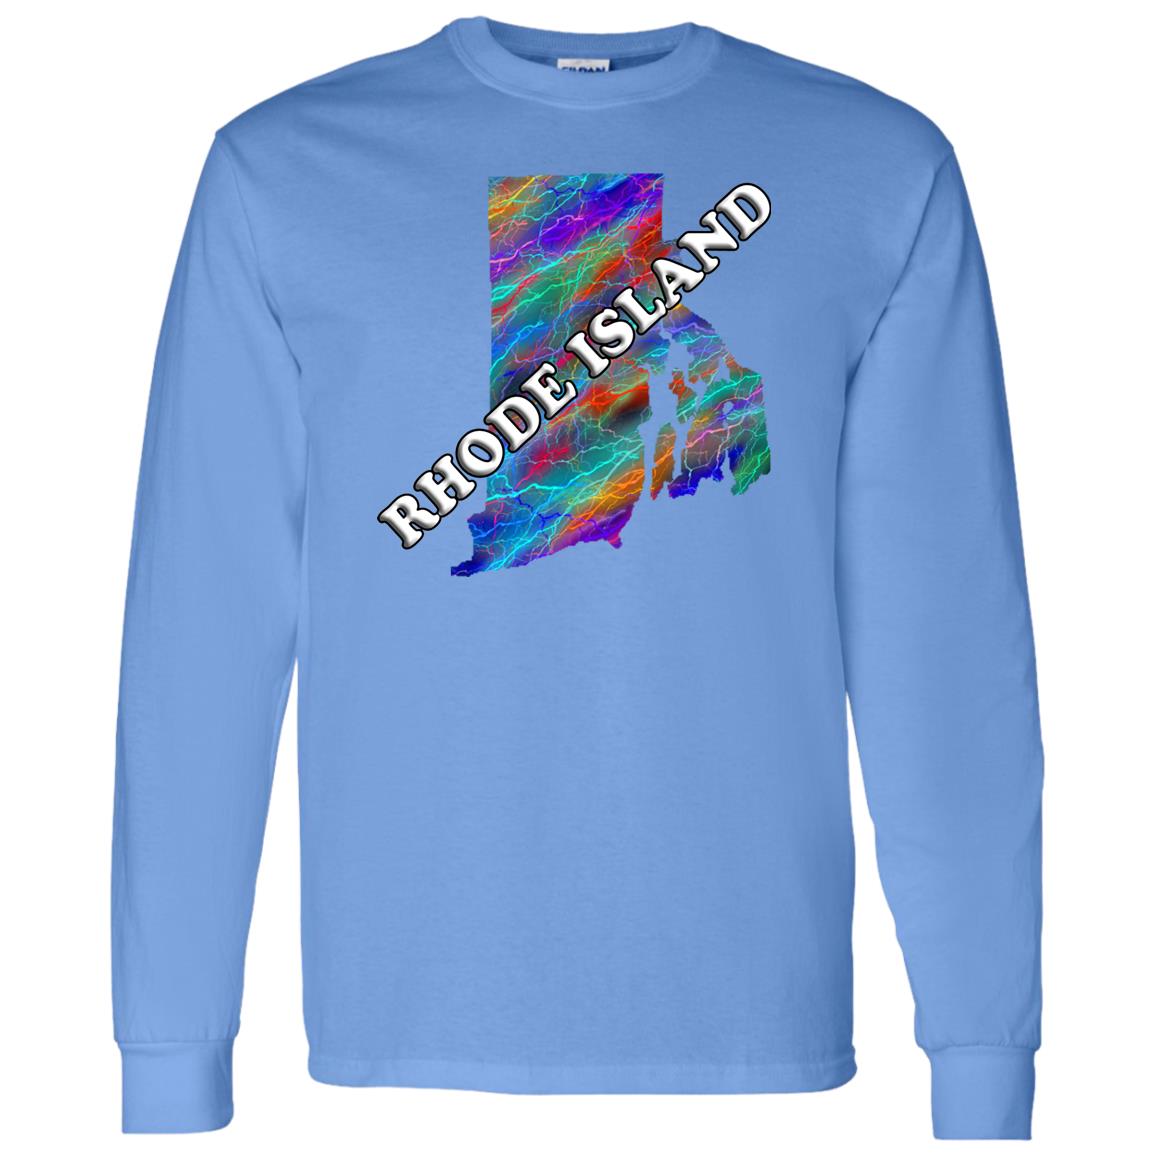 Rhode Island Long Sleeve State T-Shirt